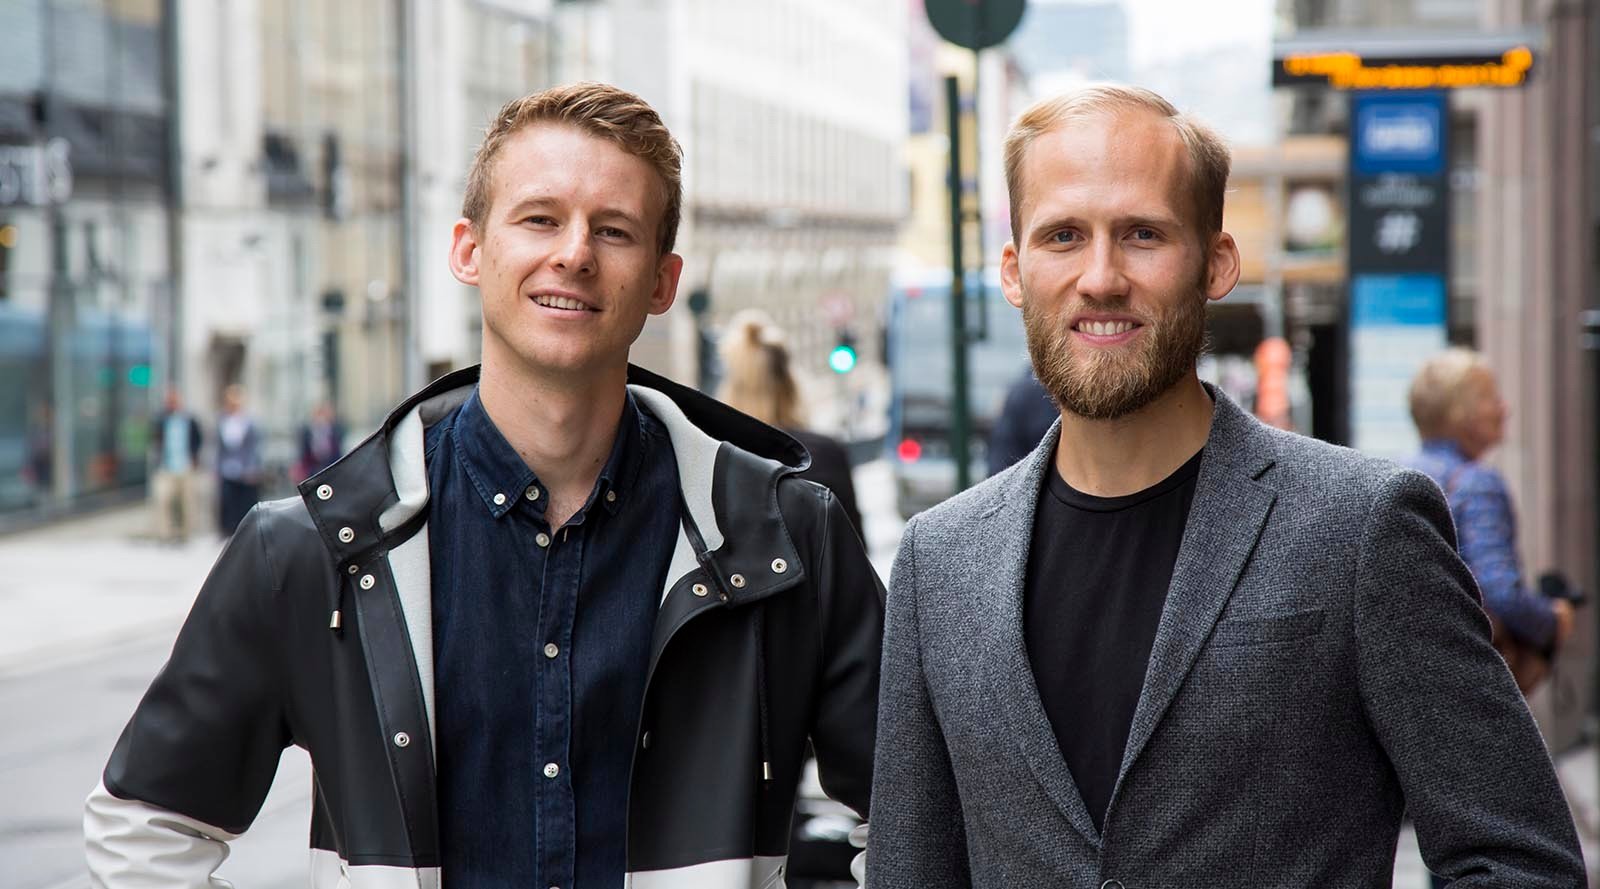 Norsk kundeavis-app solgt for et tosifret millionbeløp - slik skal de nye eierne vokse videre